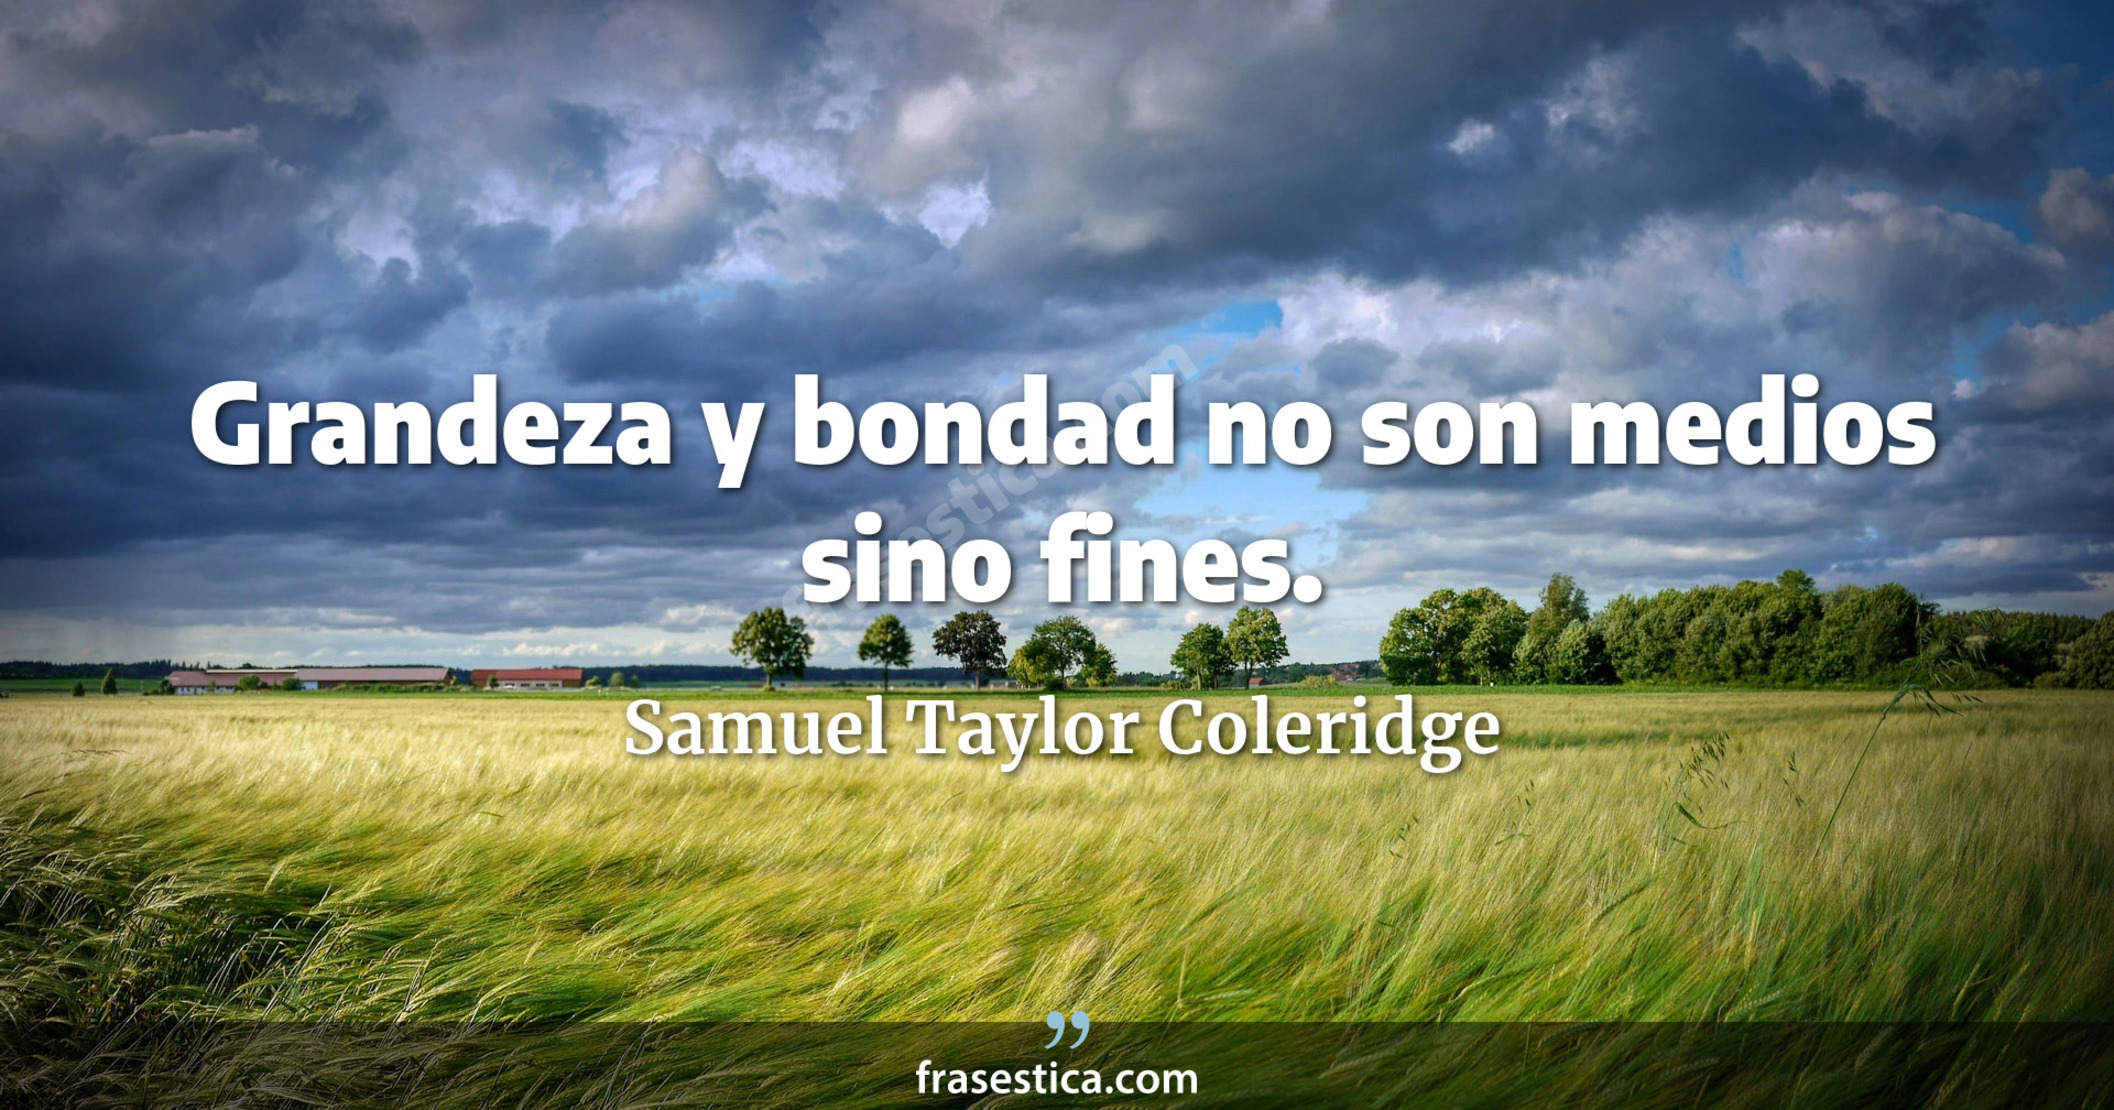 Grandeza y bondad no son medios sino fines. - Samuel Taylor Coleridge